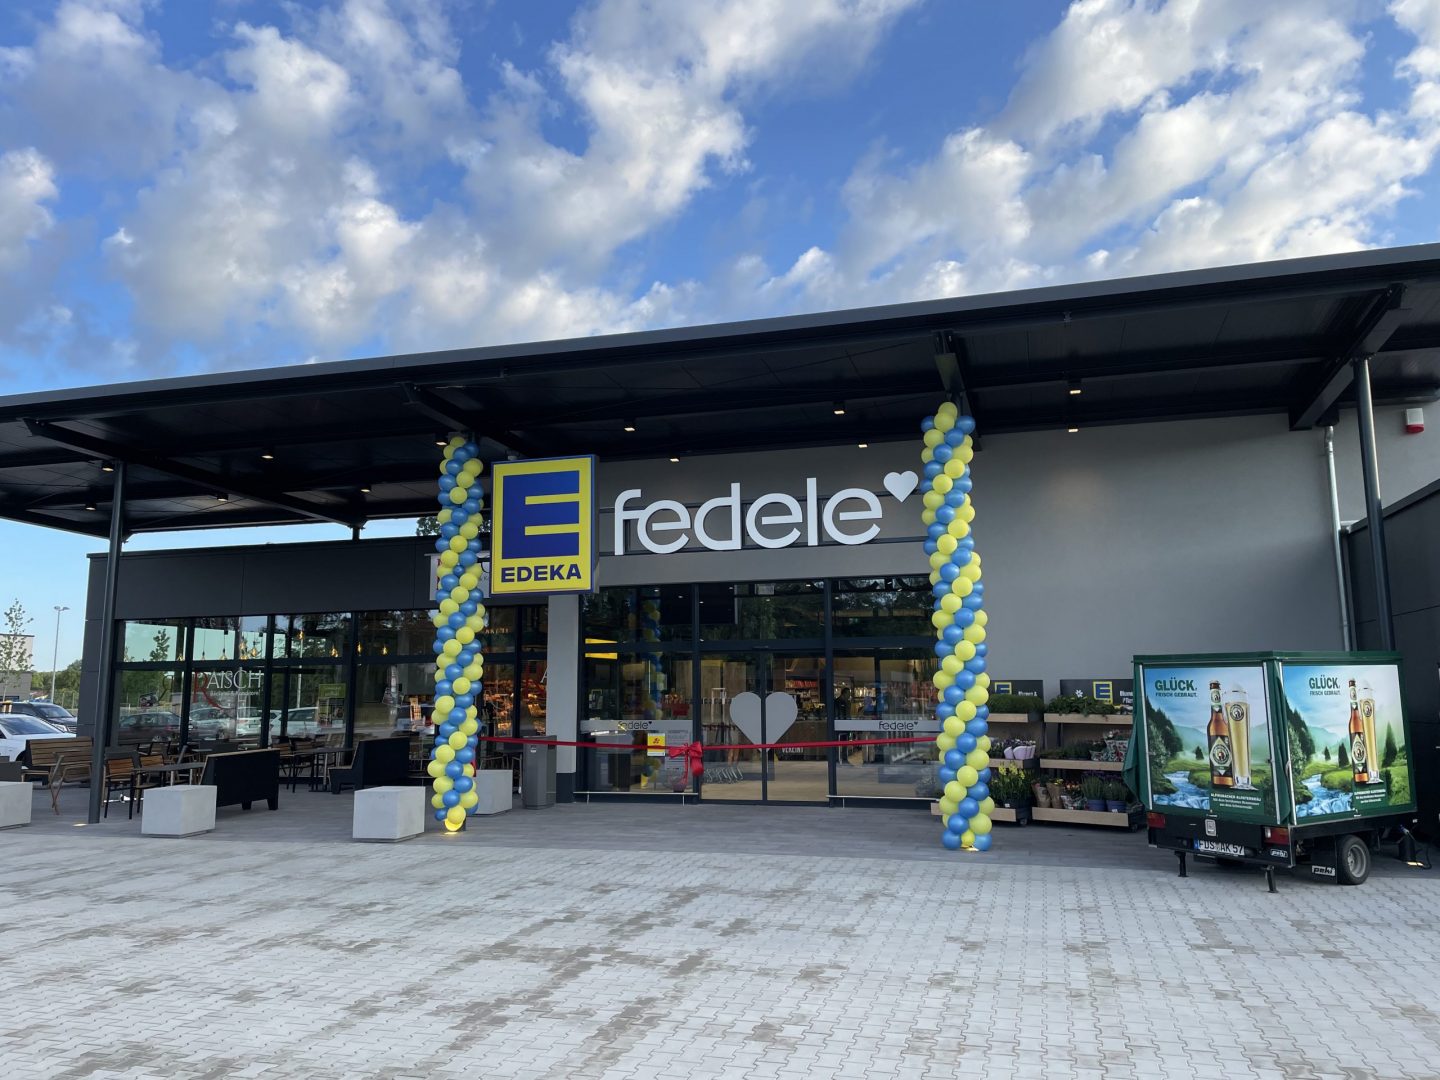 EDEKA Fedele eröffnet energieeffizienten Markt mit regionaler Vielfalt in Engelsbrand